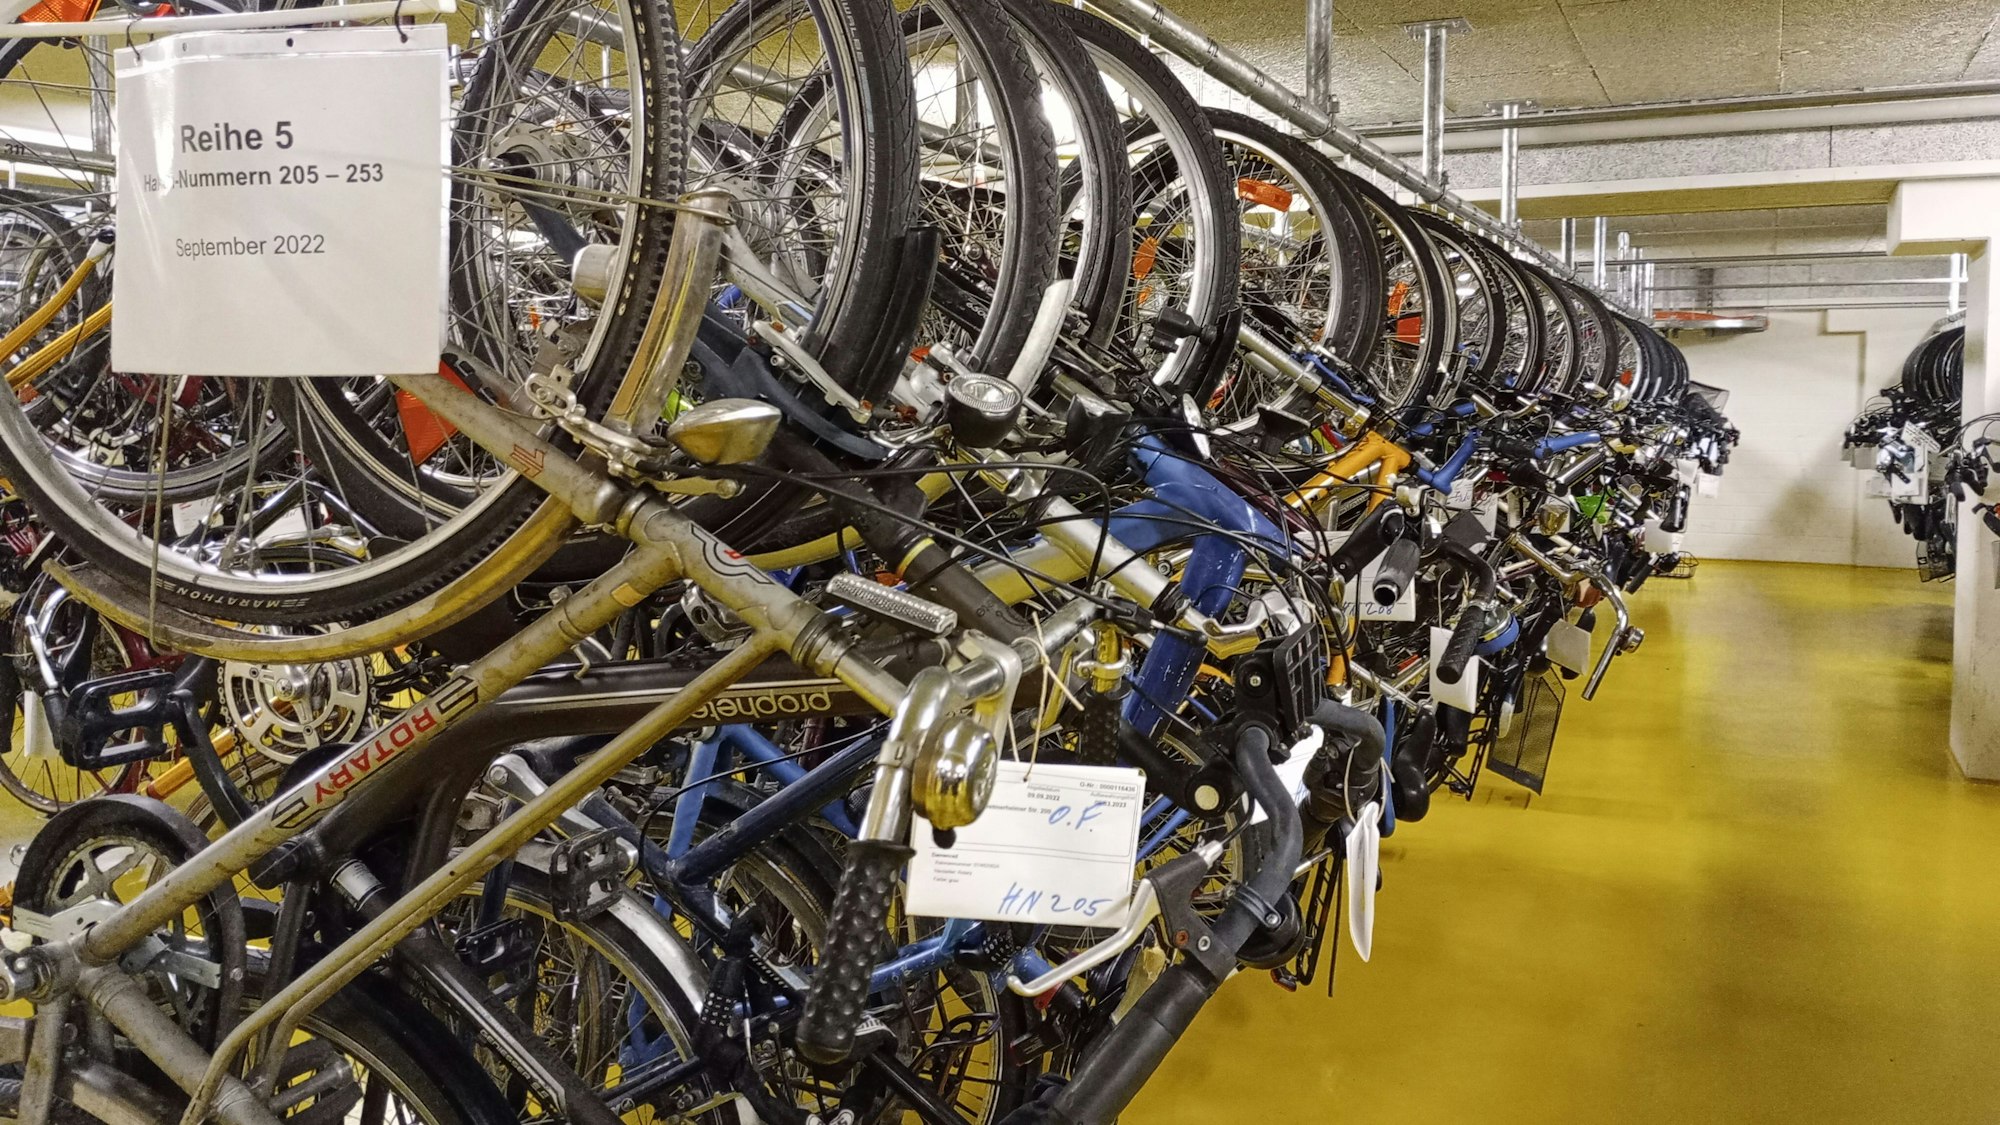 Fahrradkeller: Mehr als 1000 Räder lagern im Keller des Fundbüros, natürlich ordentlich beschriftet und katalogisiert.